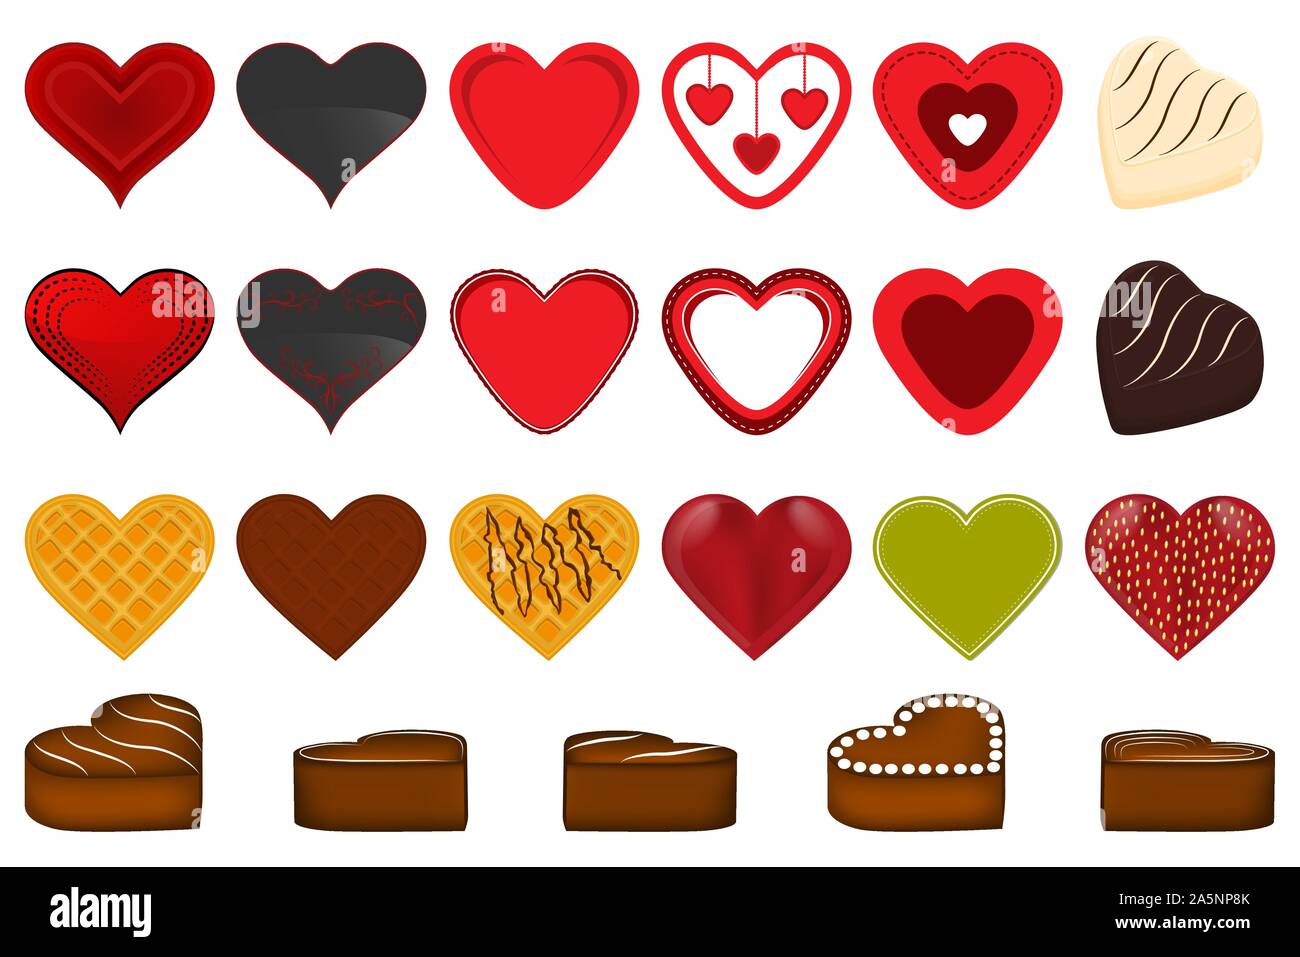 Abbildung auf Thema große farbige verschiedene schöne rote Herzen für Valentinstag. Herz-Muster bestehend aus Sammlung Zubehör bei Vale Stock Vektor